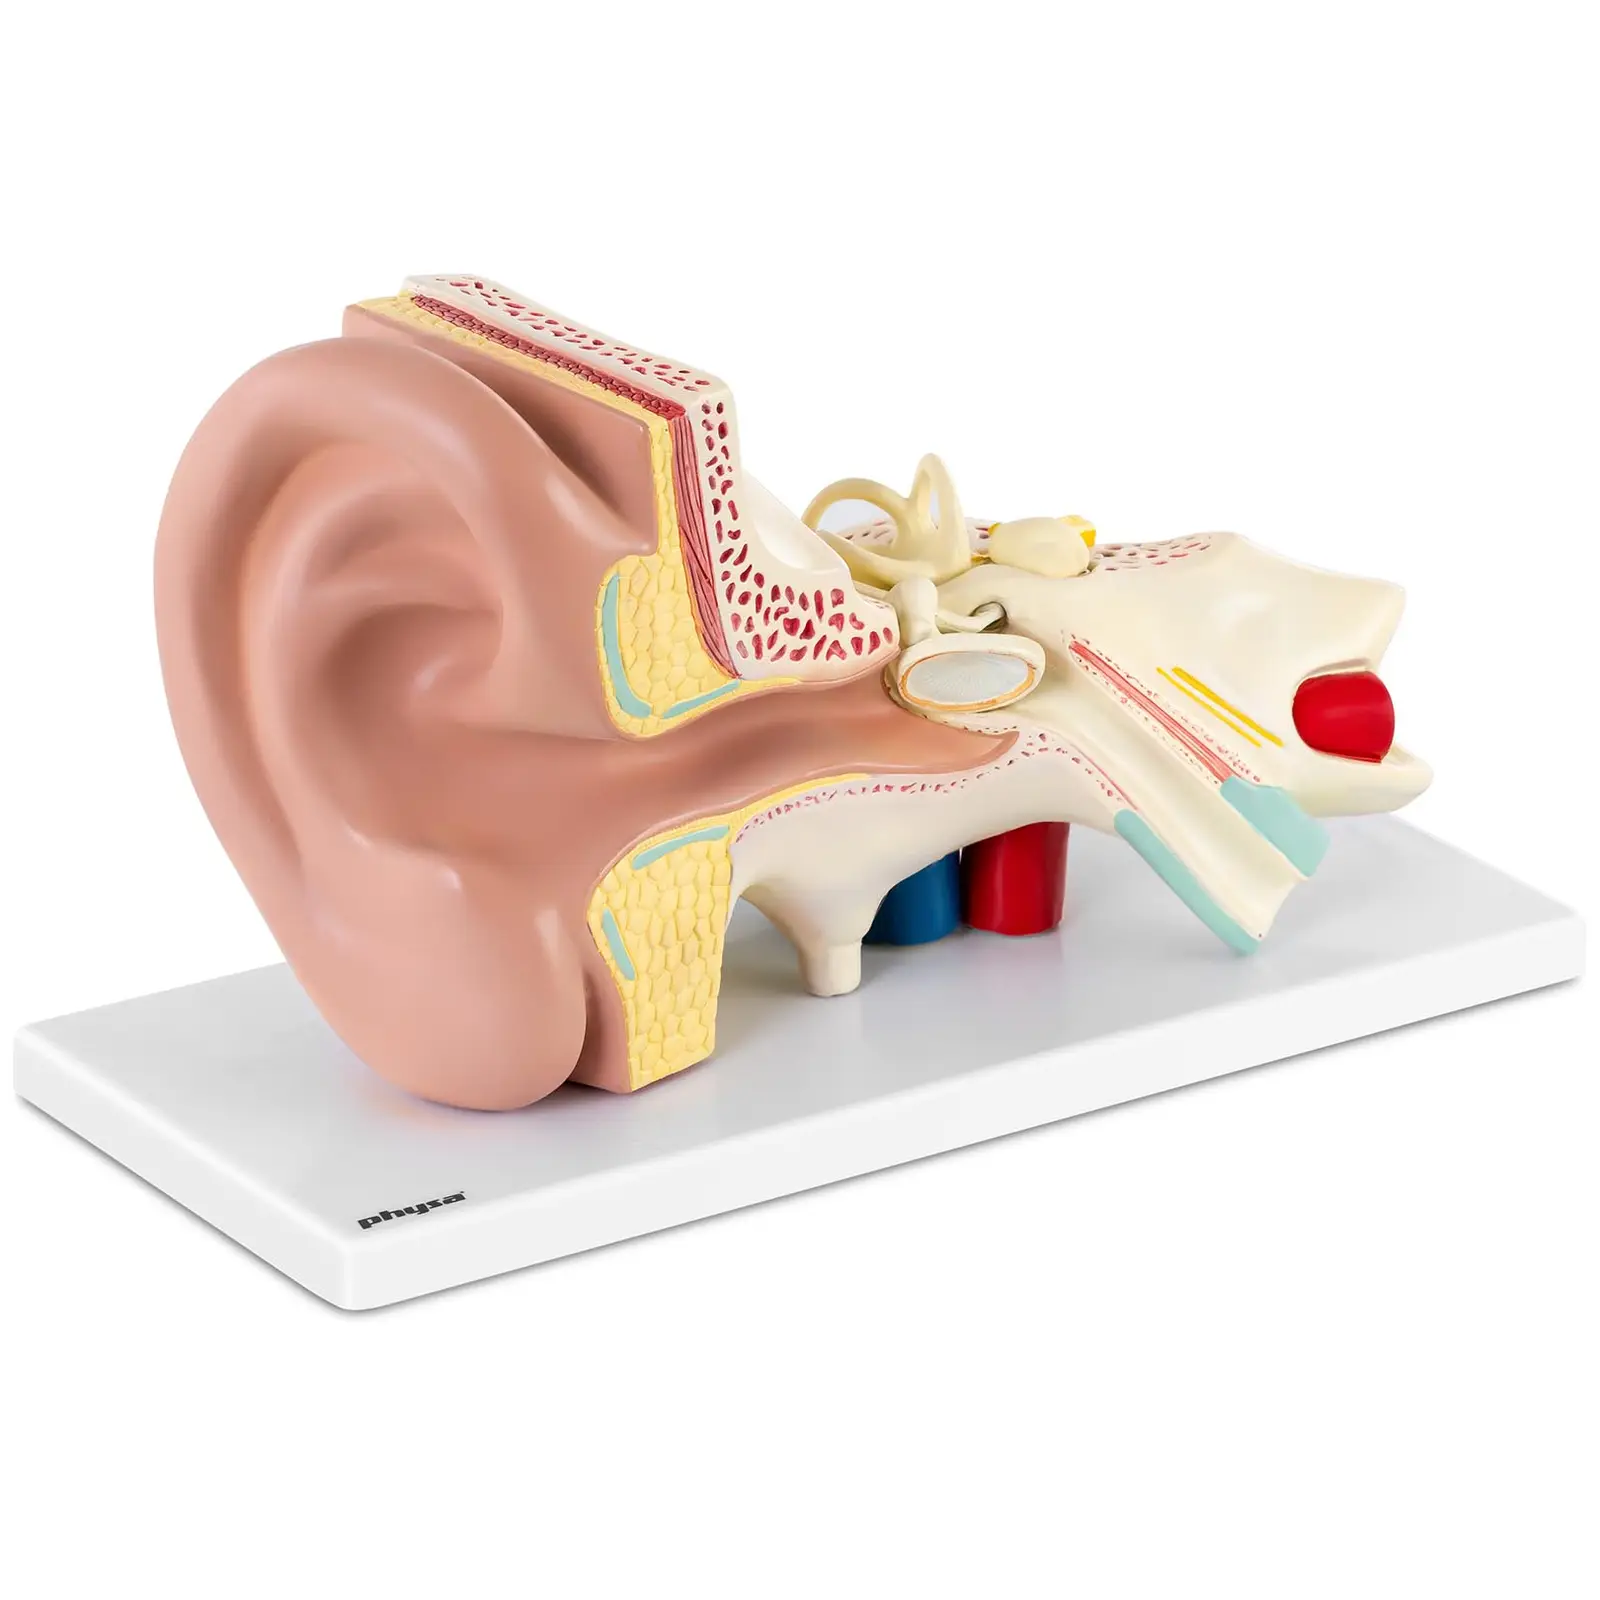 Modello orecchio - Smontabile in 4 parti - Ingrandimento x3